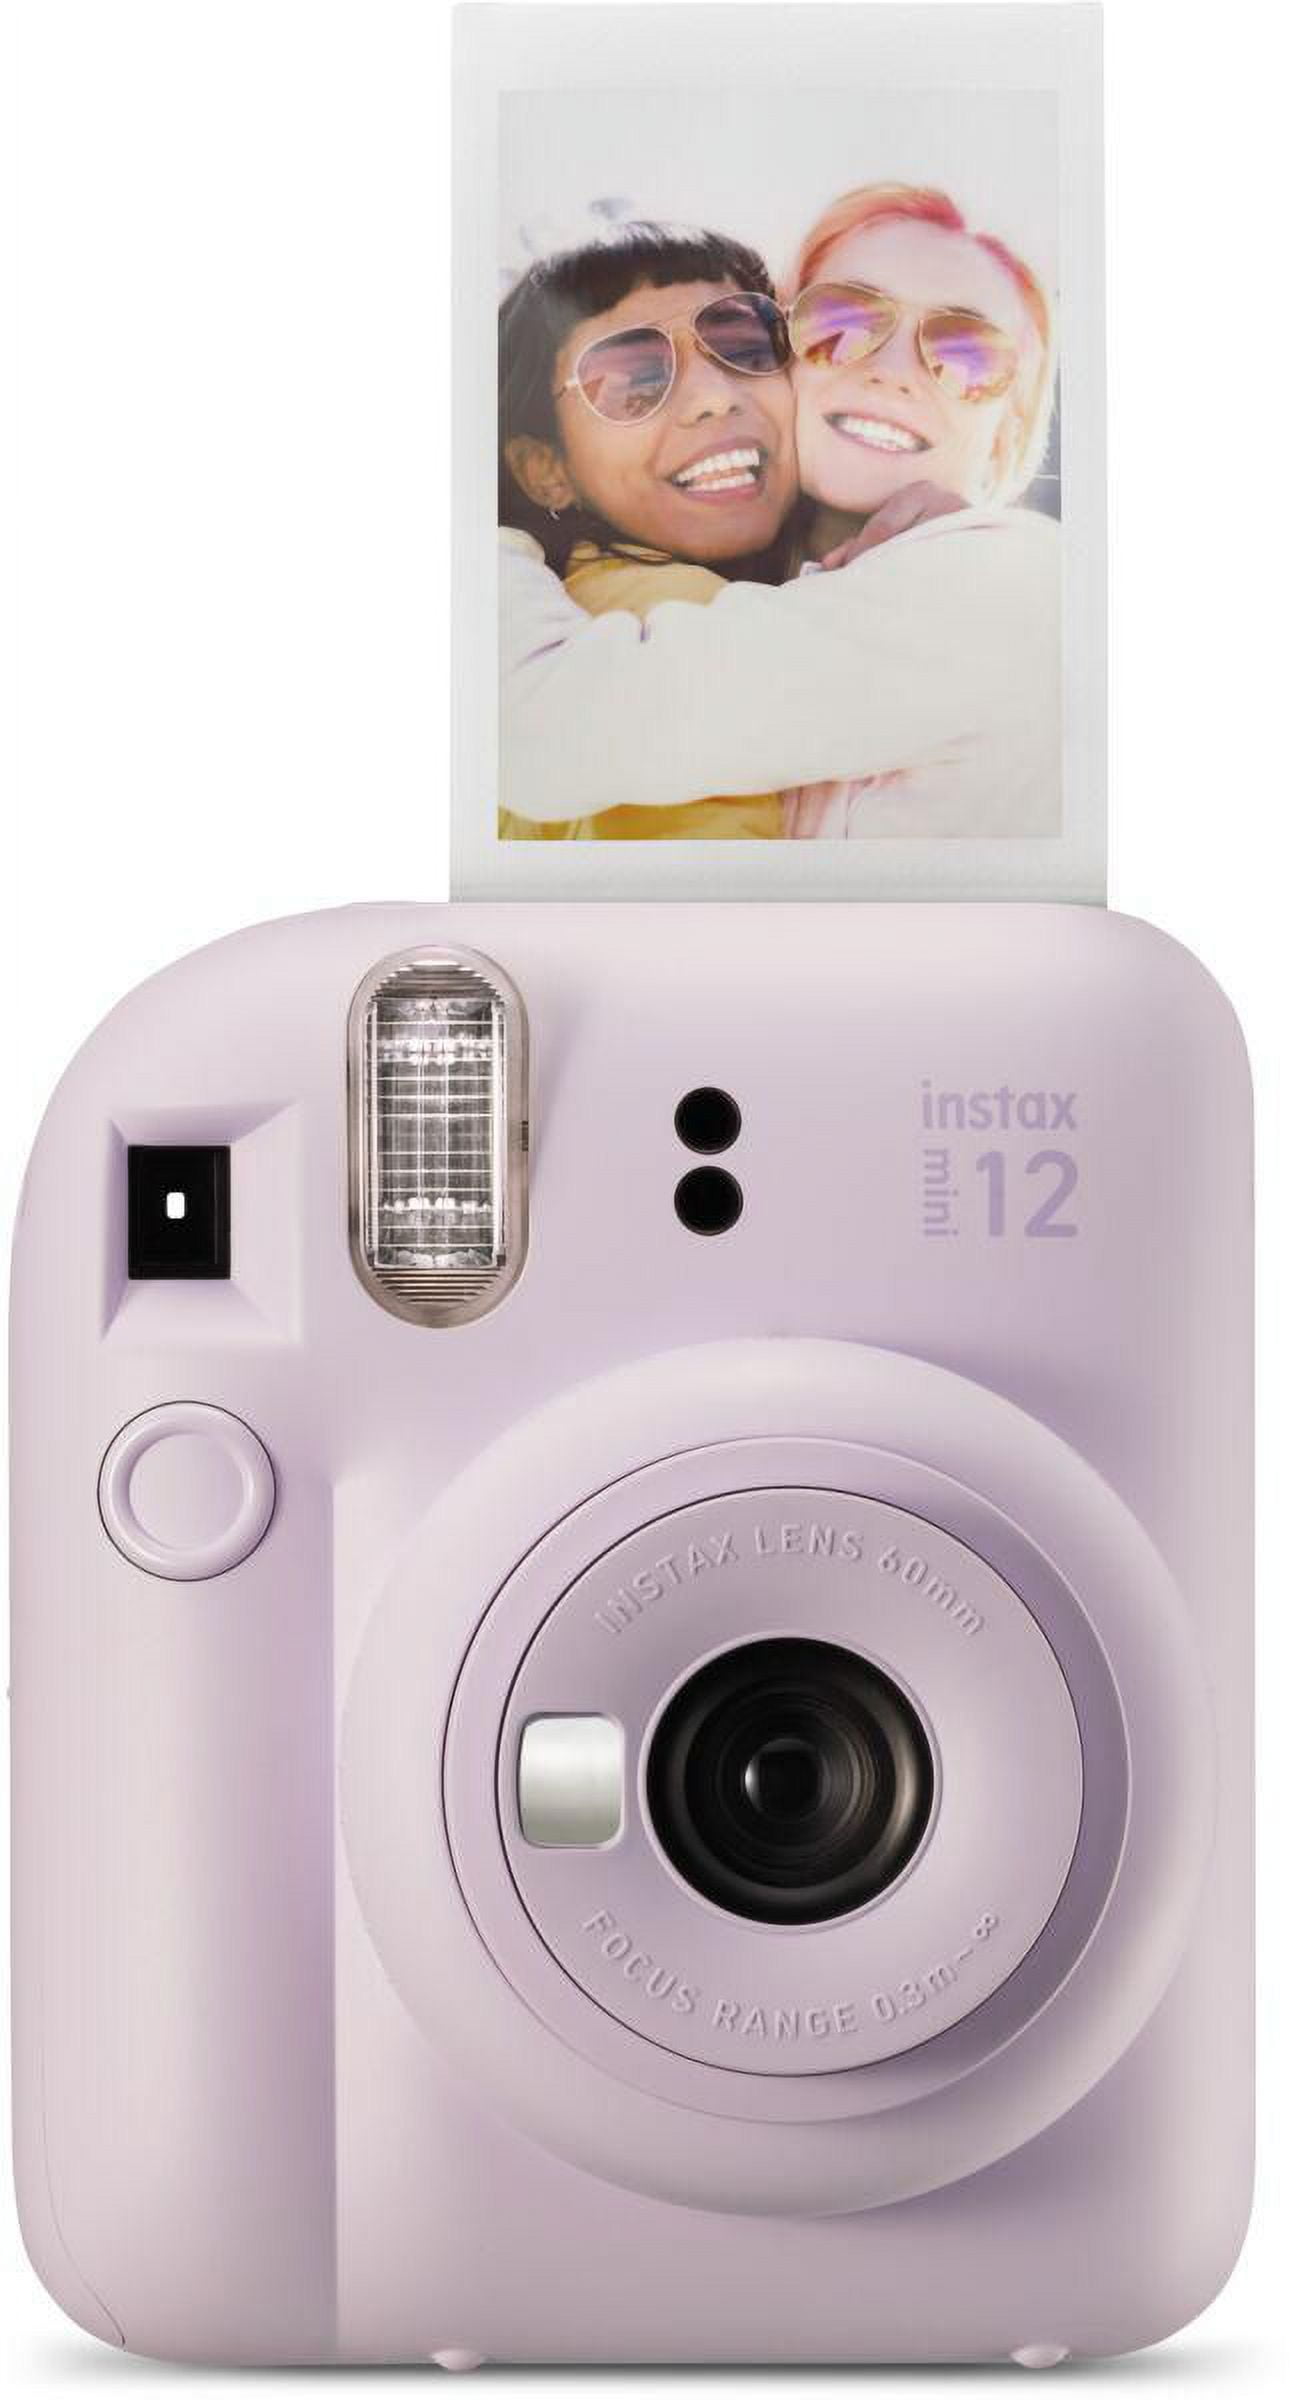 Cámara instantánea Fujifilm Instax mini 12 lila